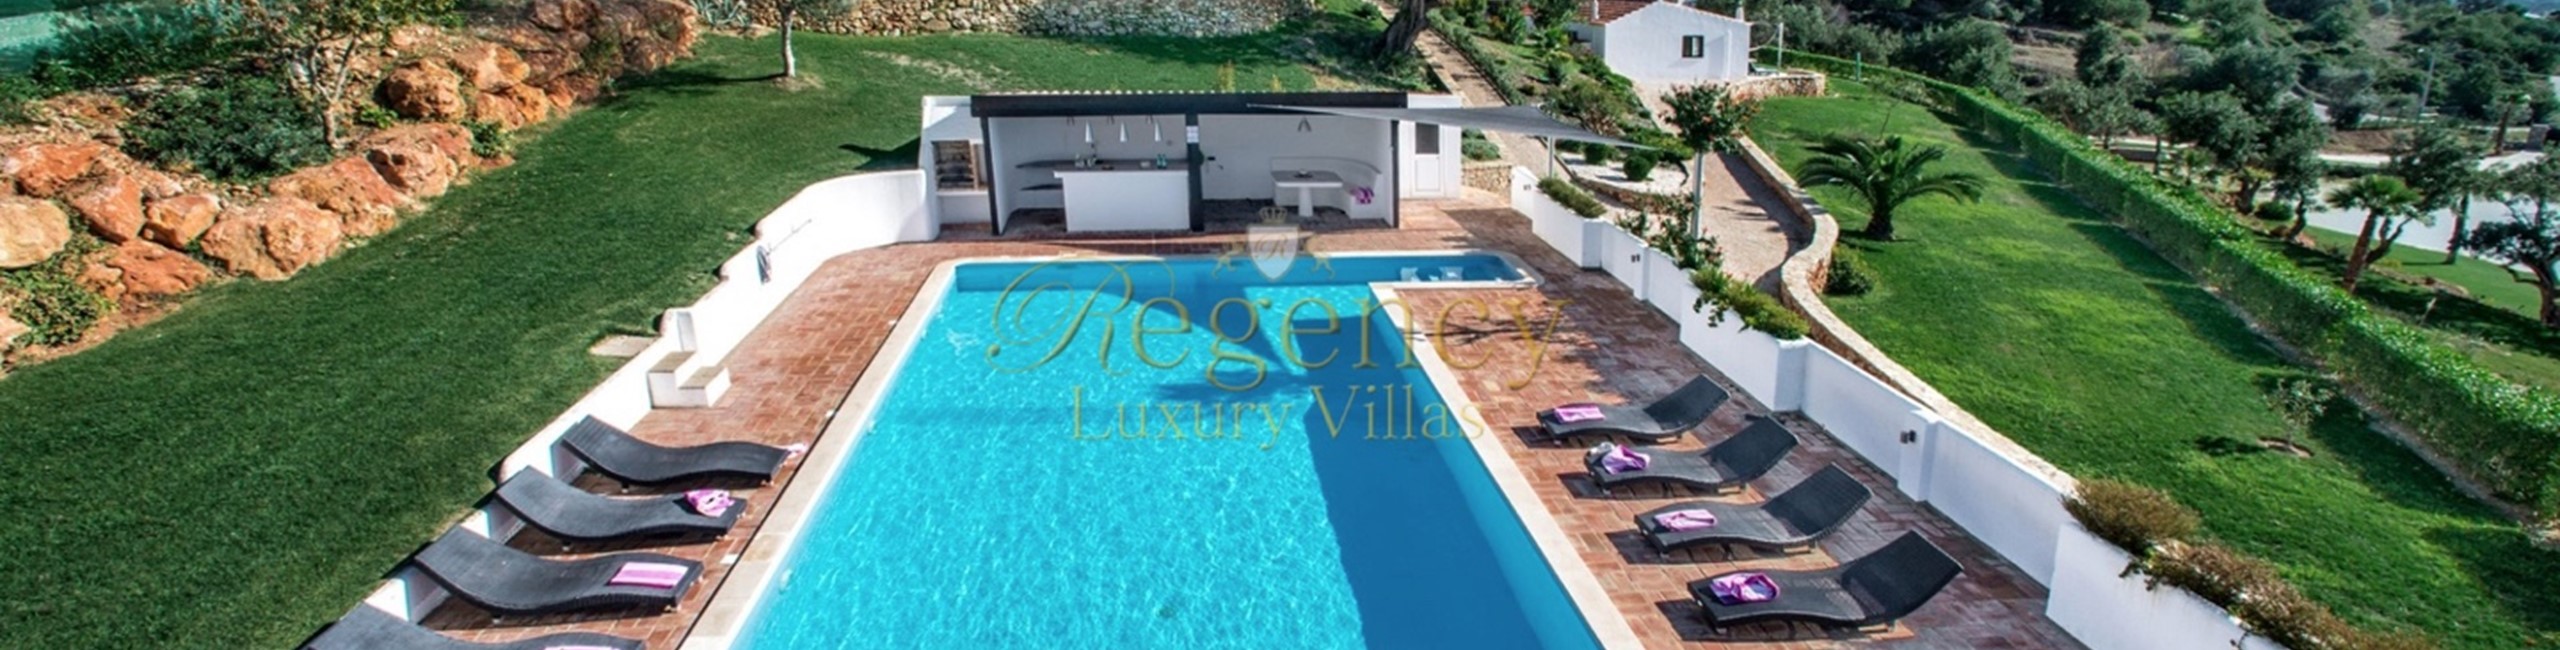 9 Bedroom Villa To Rent Near Almancil Algarve With Volley Ball And Pool Regency Luxury Villas